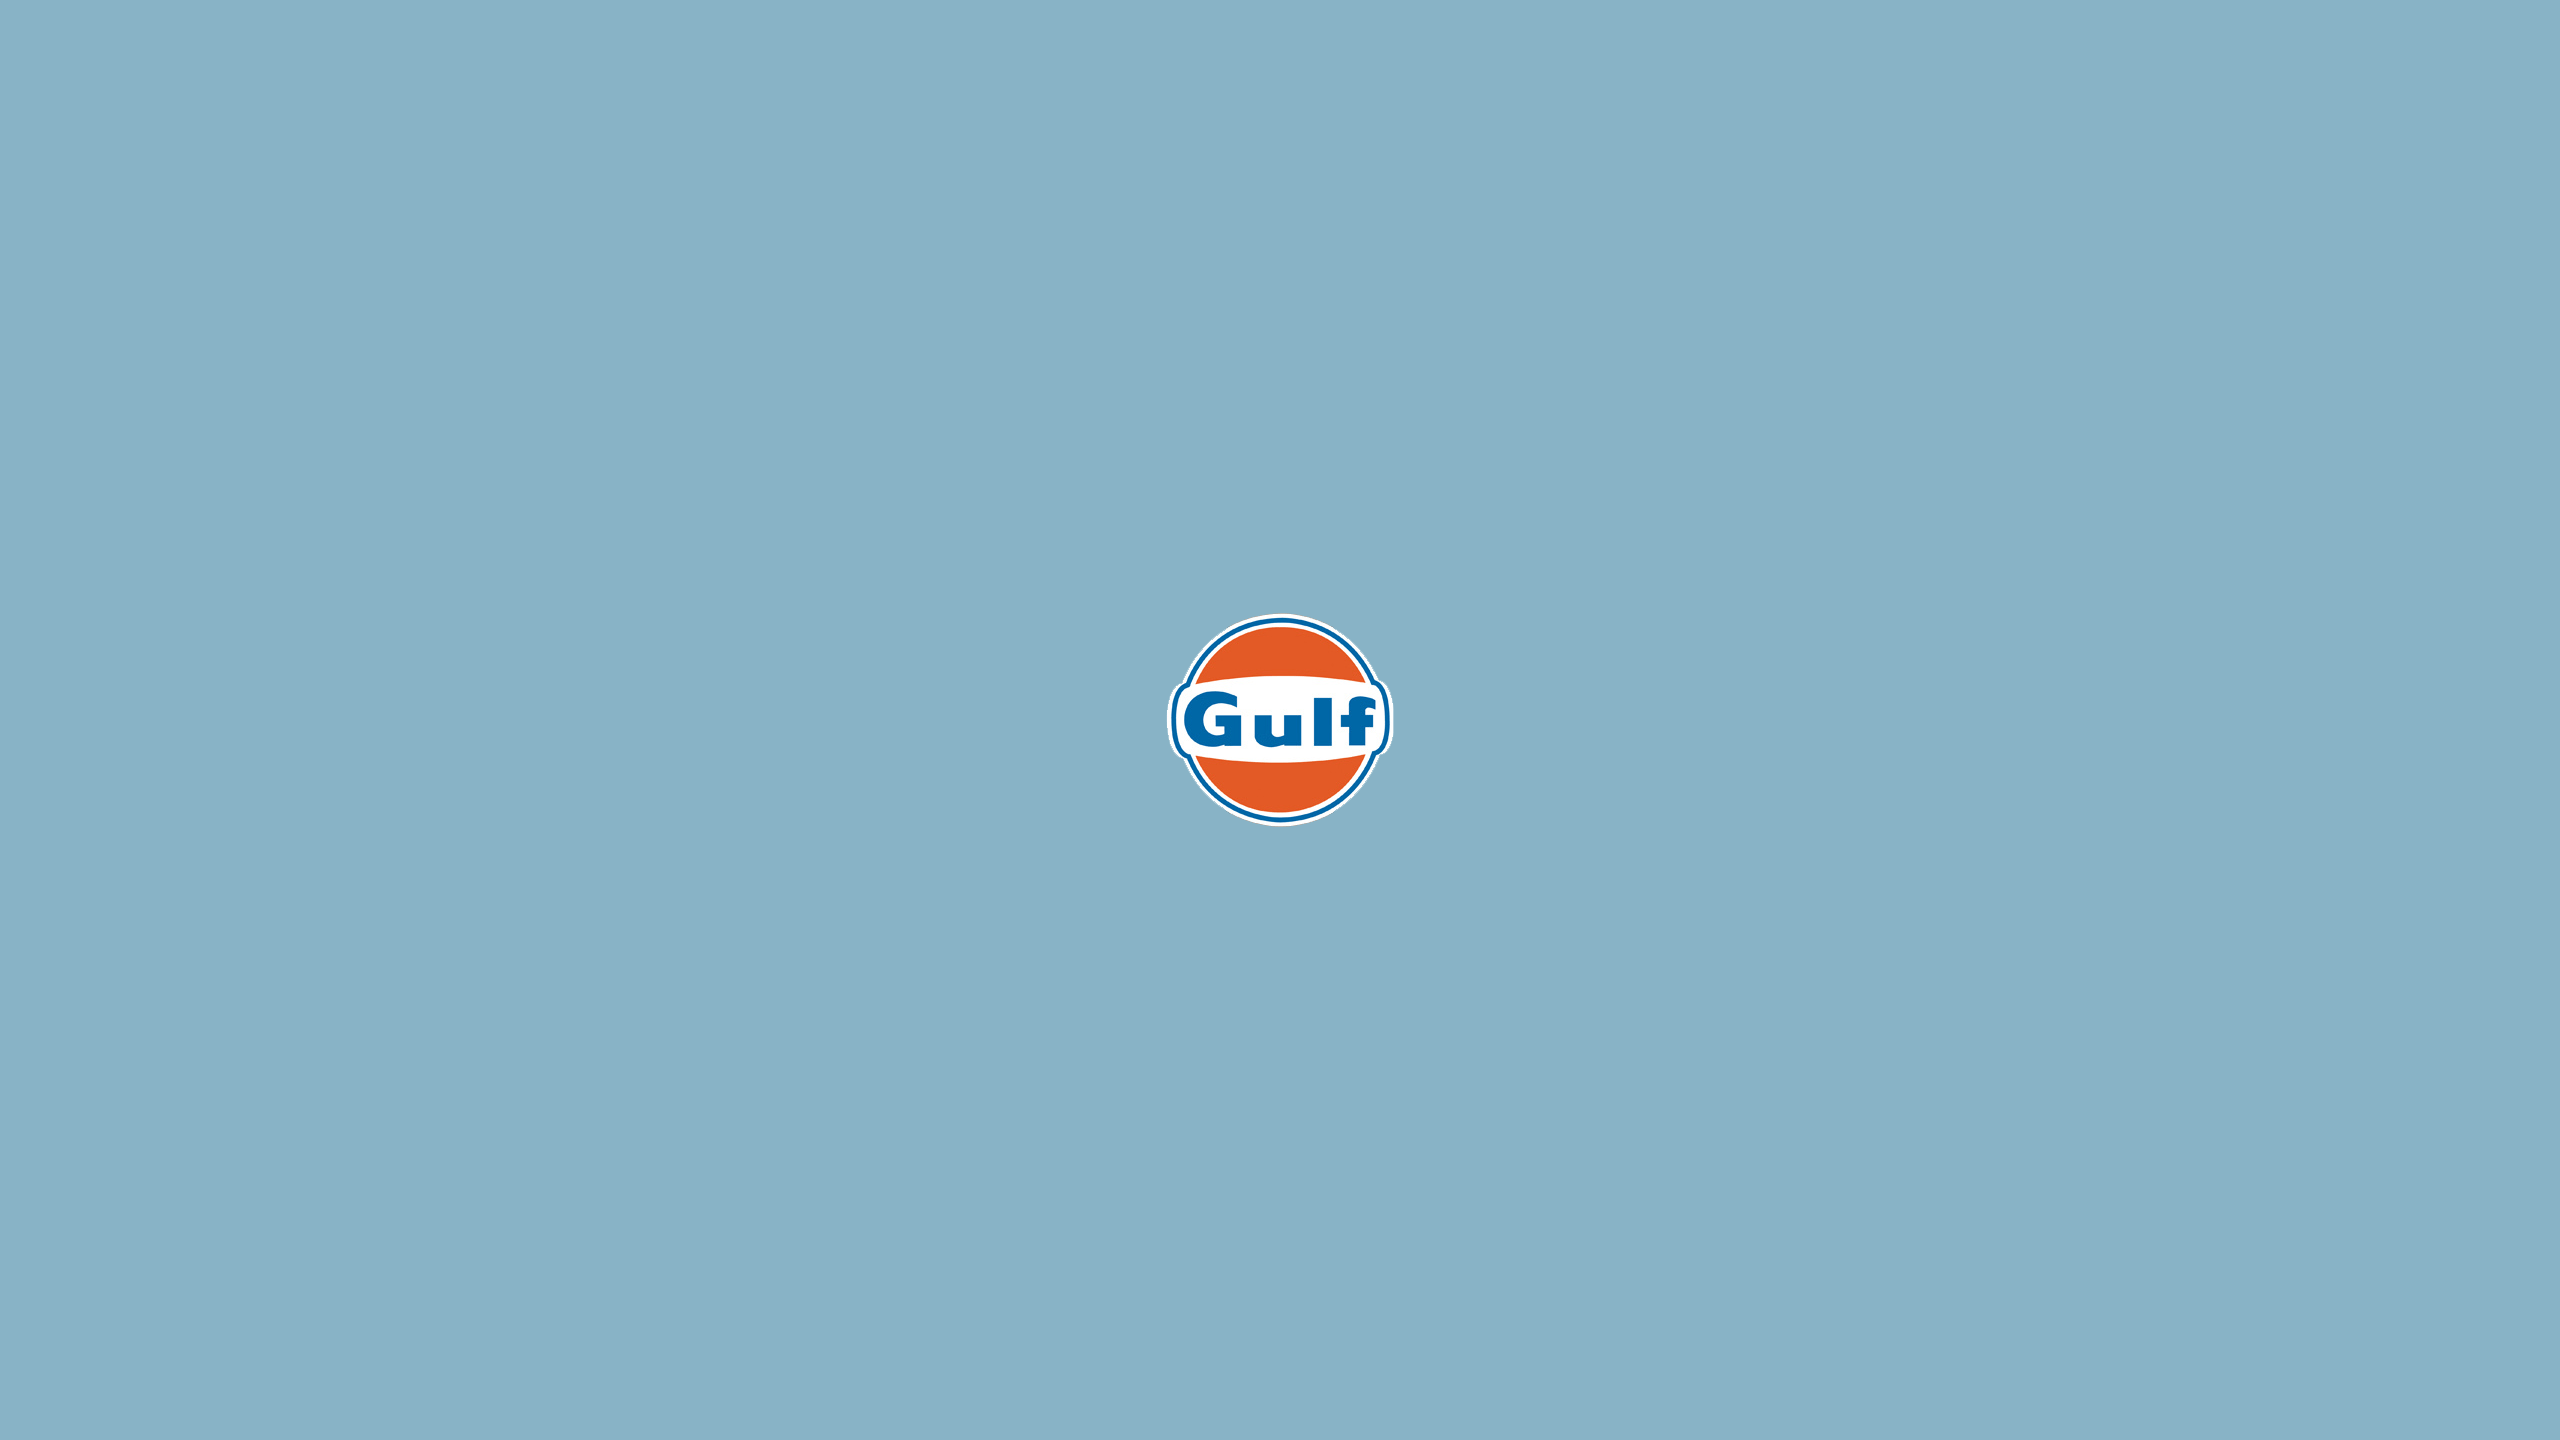 Gulf [1440 x 2560]